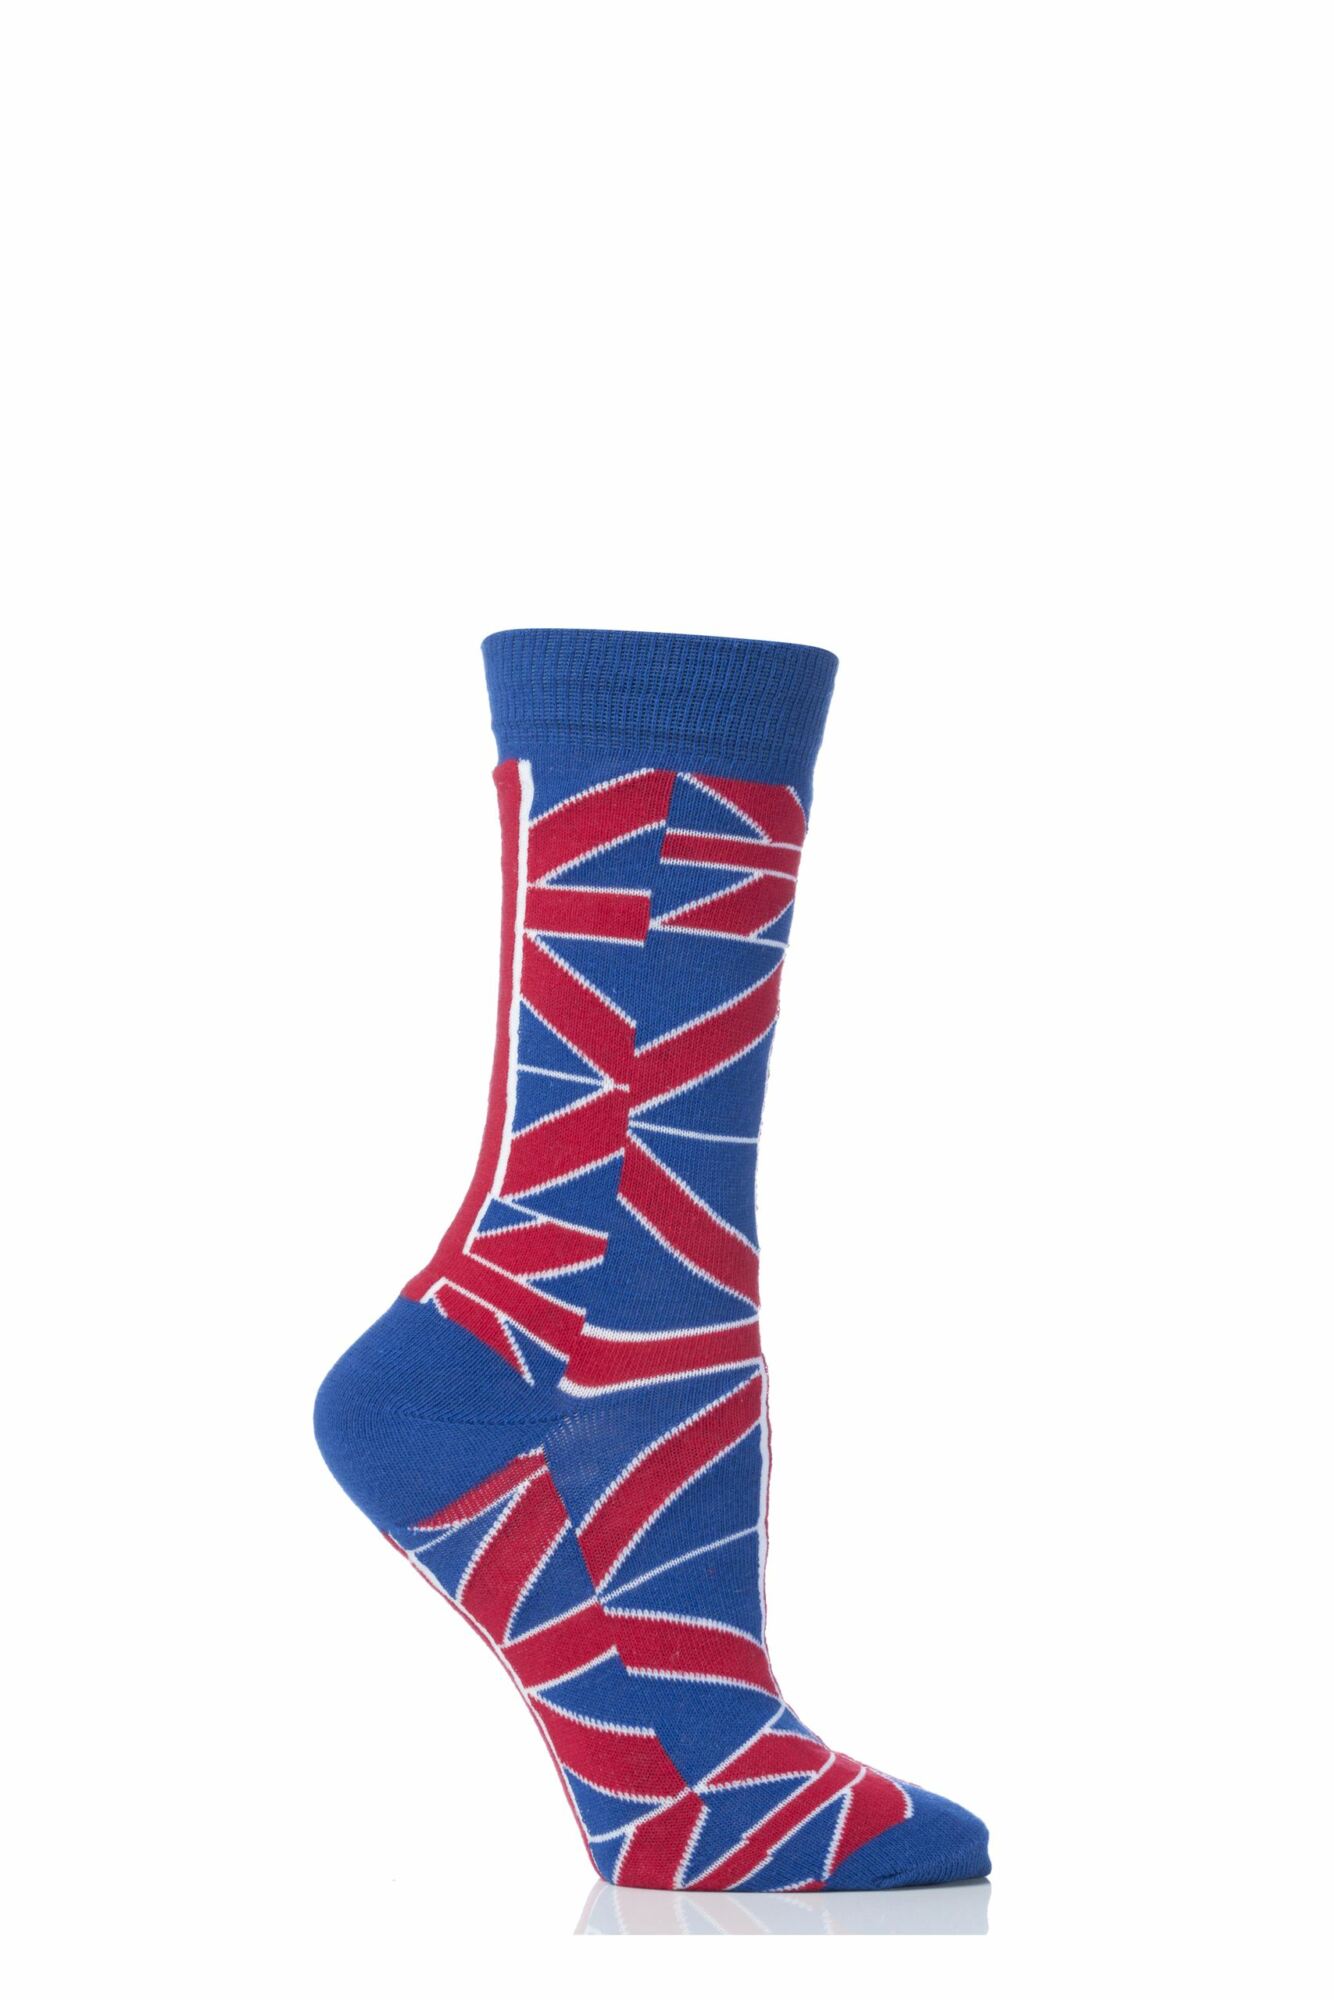 1 Pair Union Jack Ankle Socks Ladies - Sockshop